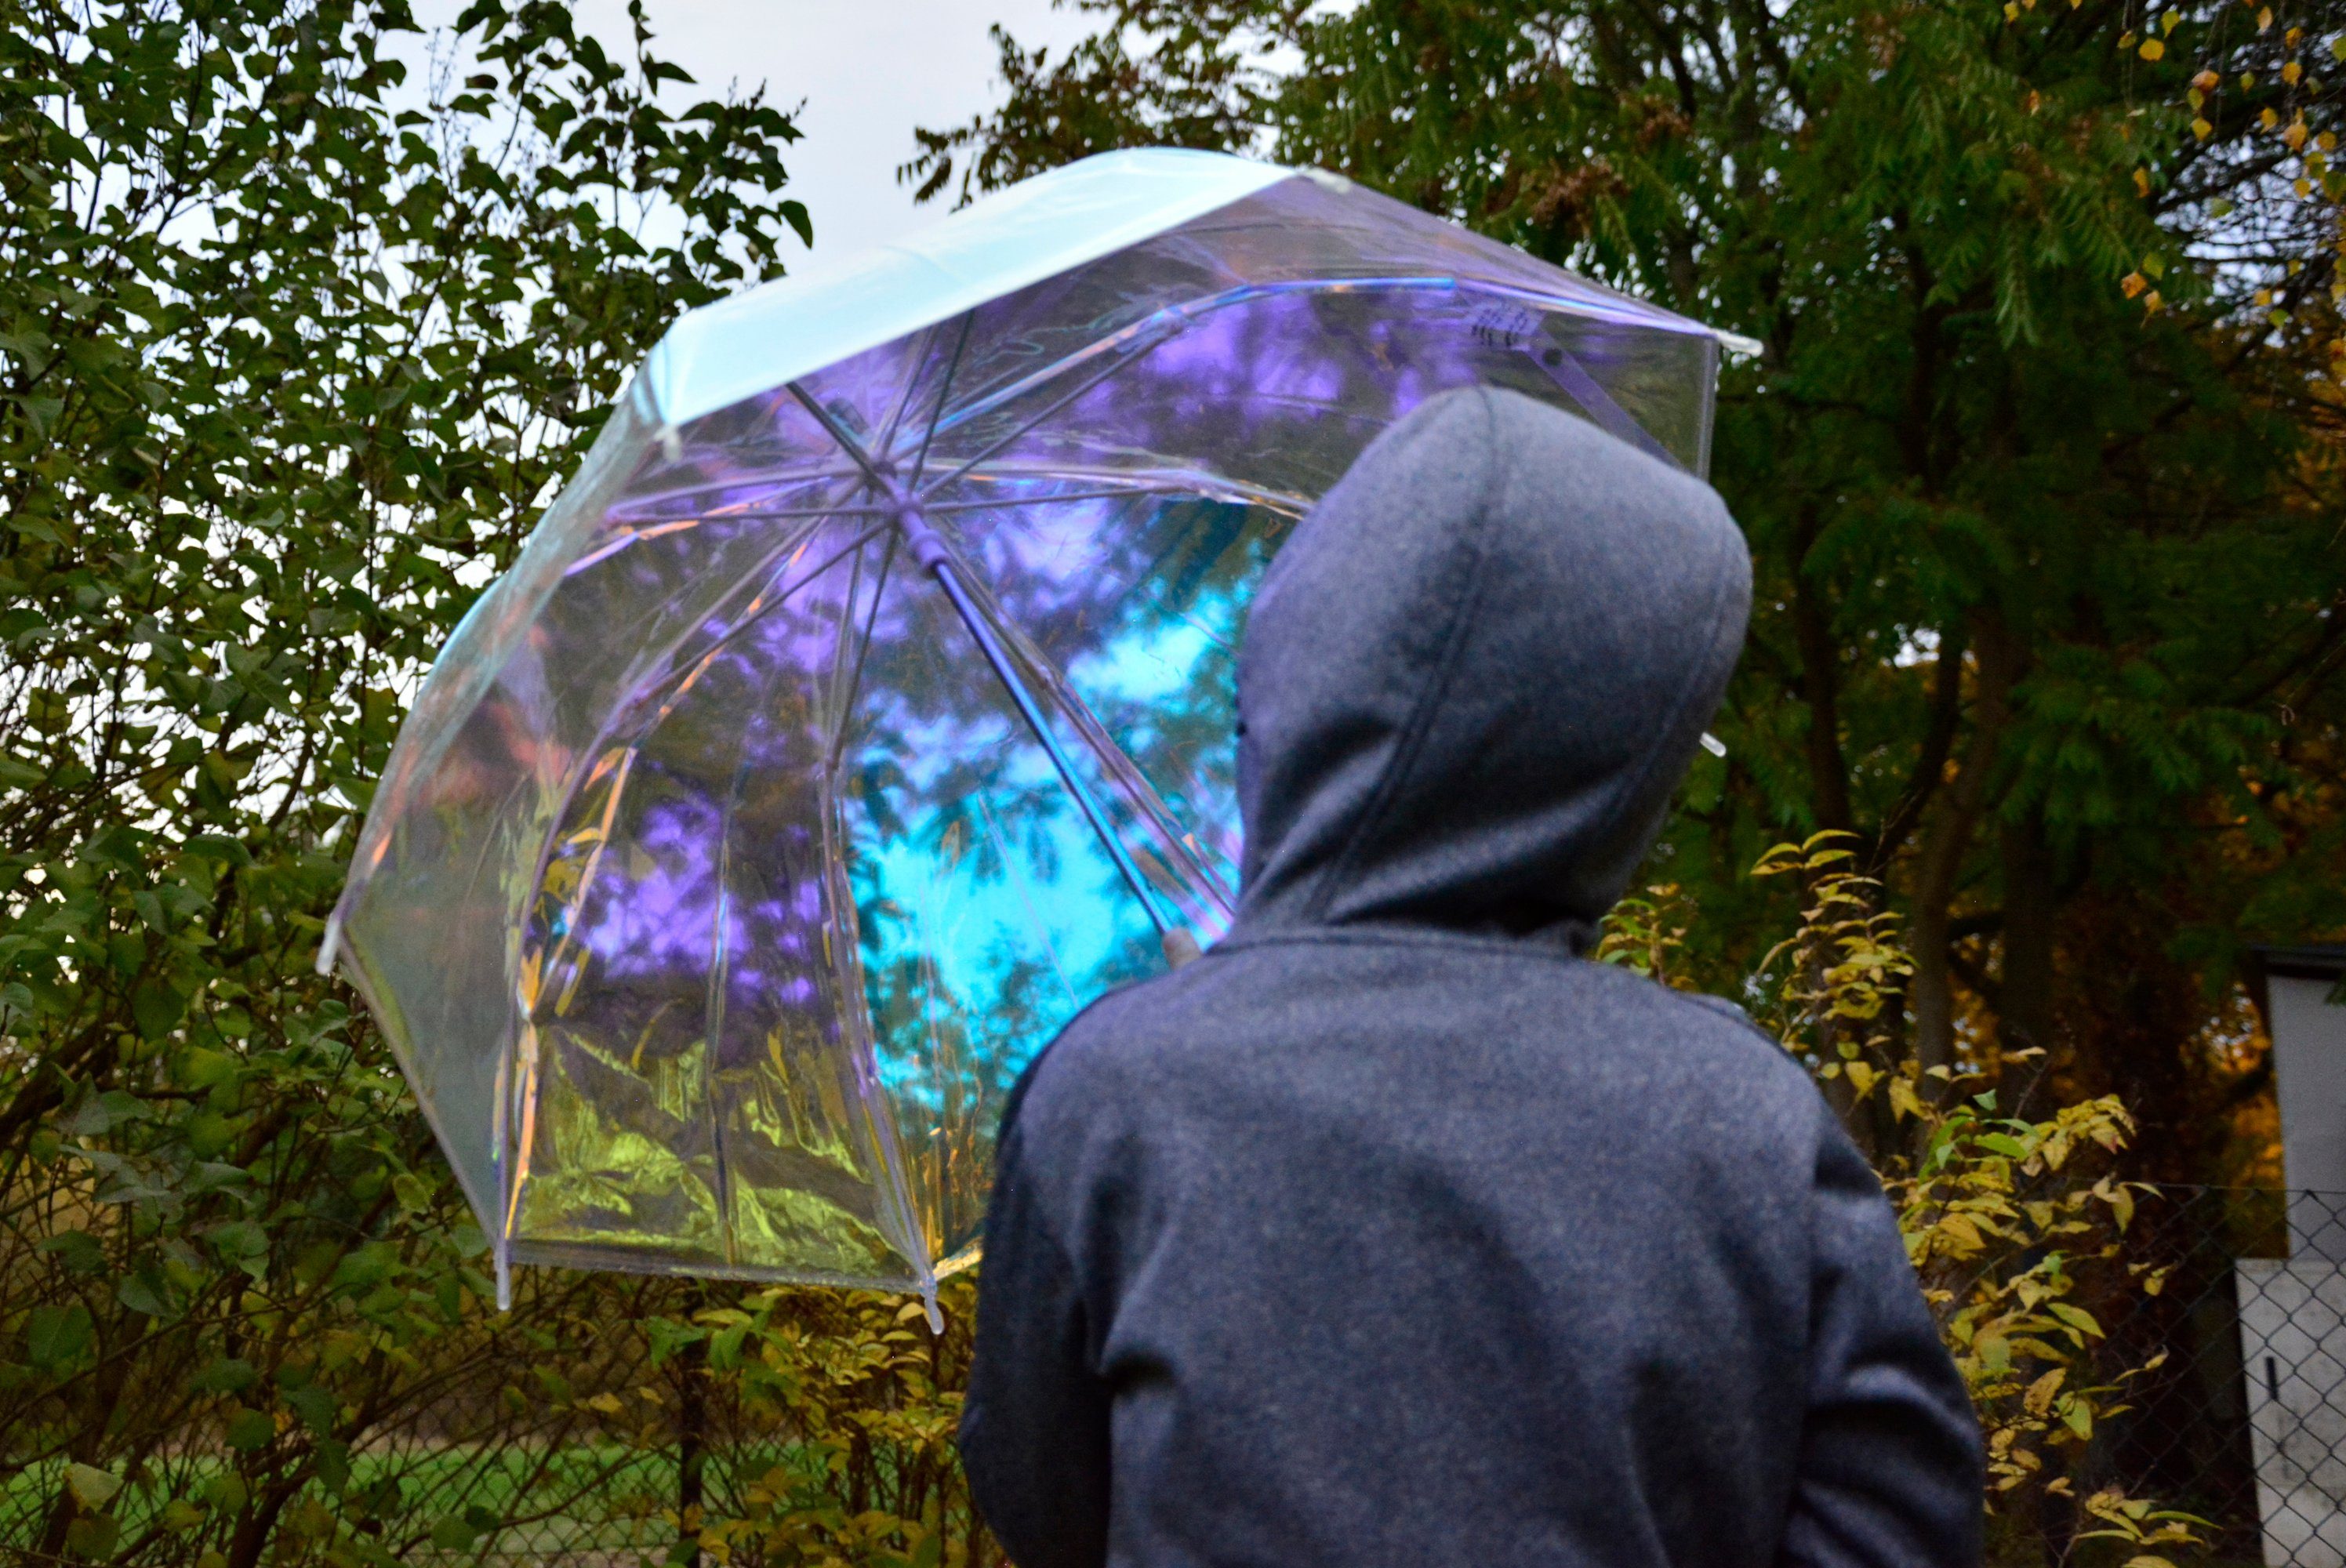 X-brella Stockregenschirm für transparenter schillernd Mädchen, bunt in Gold Glockenschirm Pastellfarben und